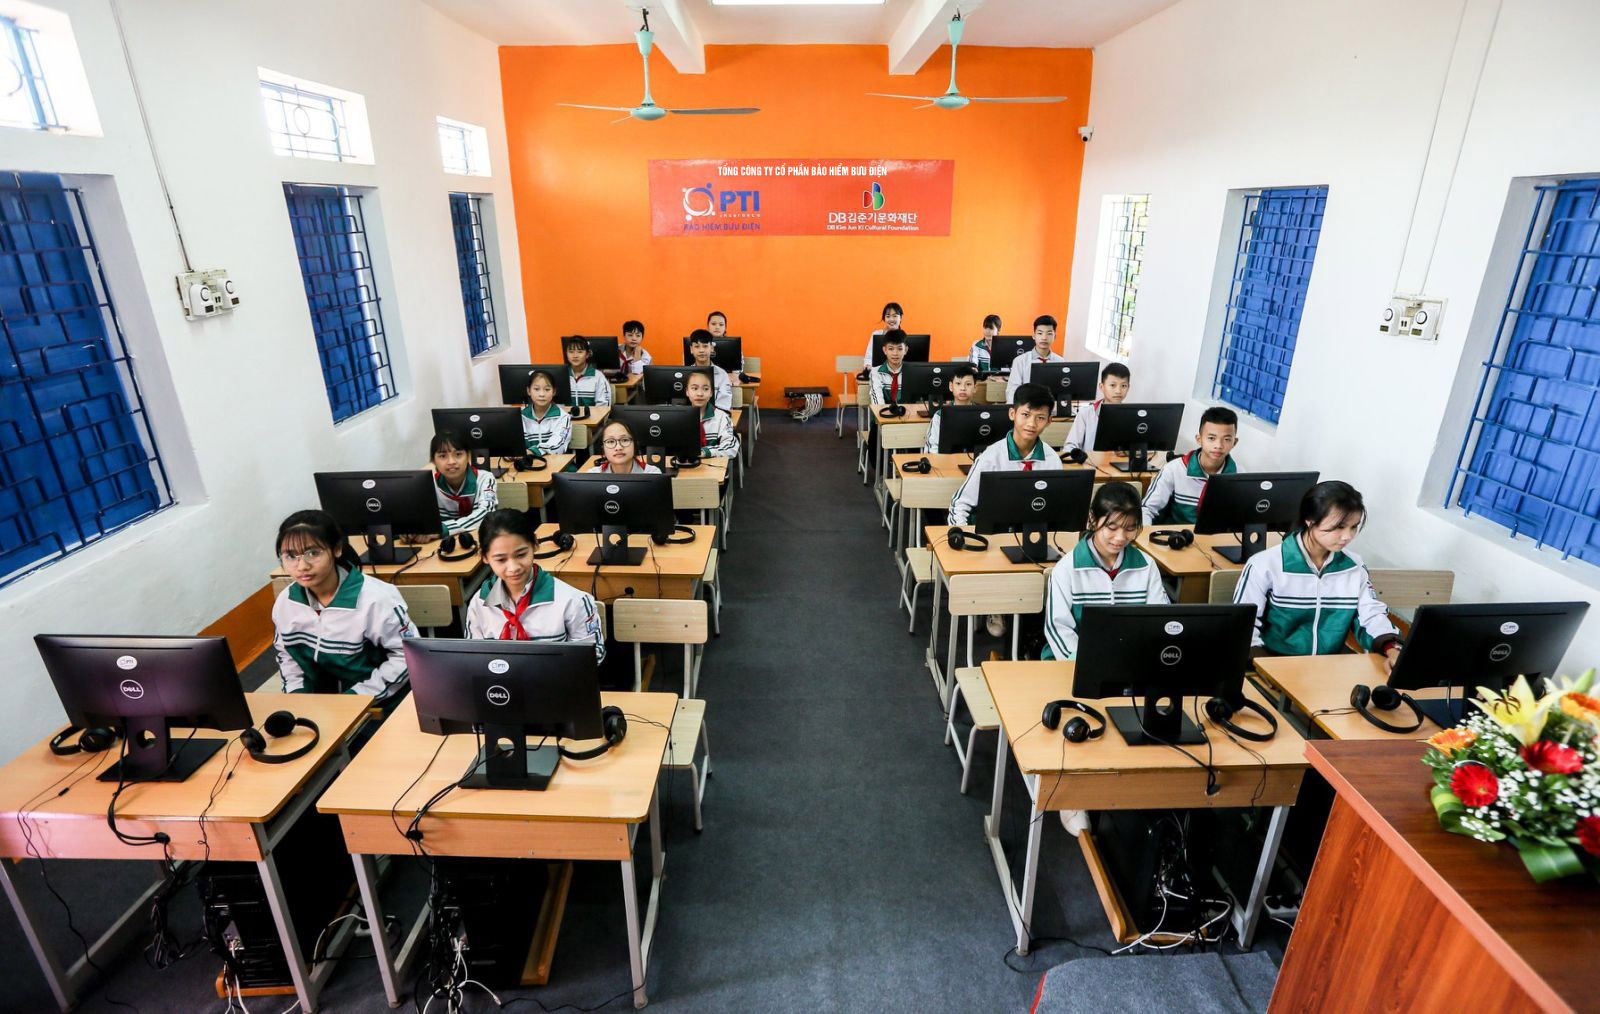 PTI tiếp tục đầu tư công nghệ cho nhiều trường học - Ảnh 1.